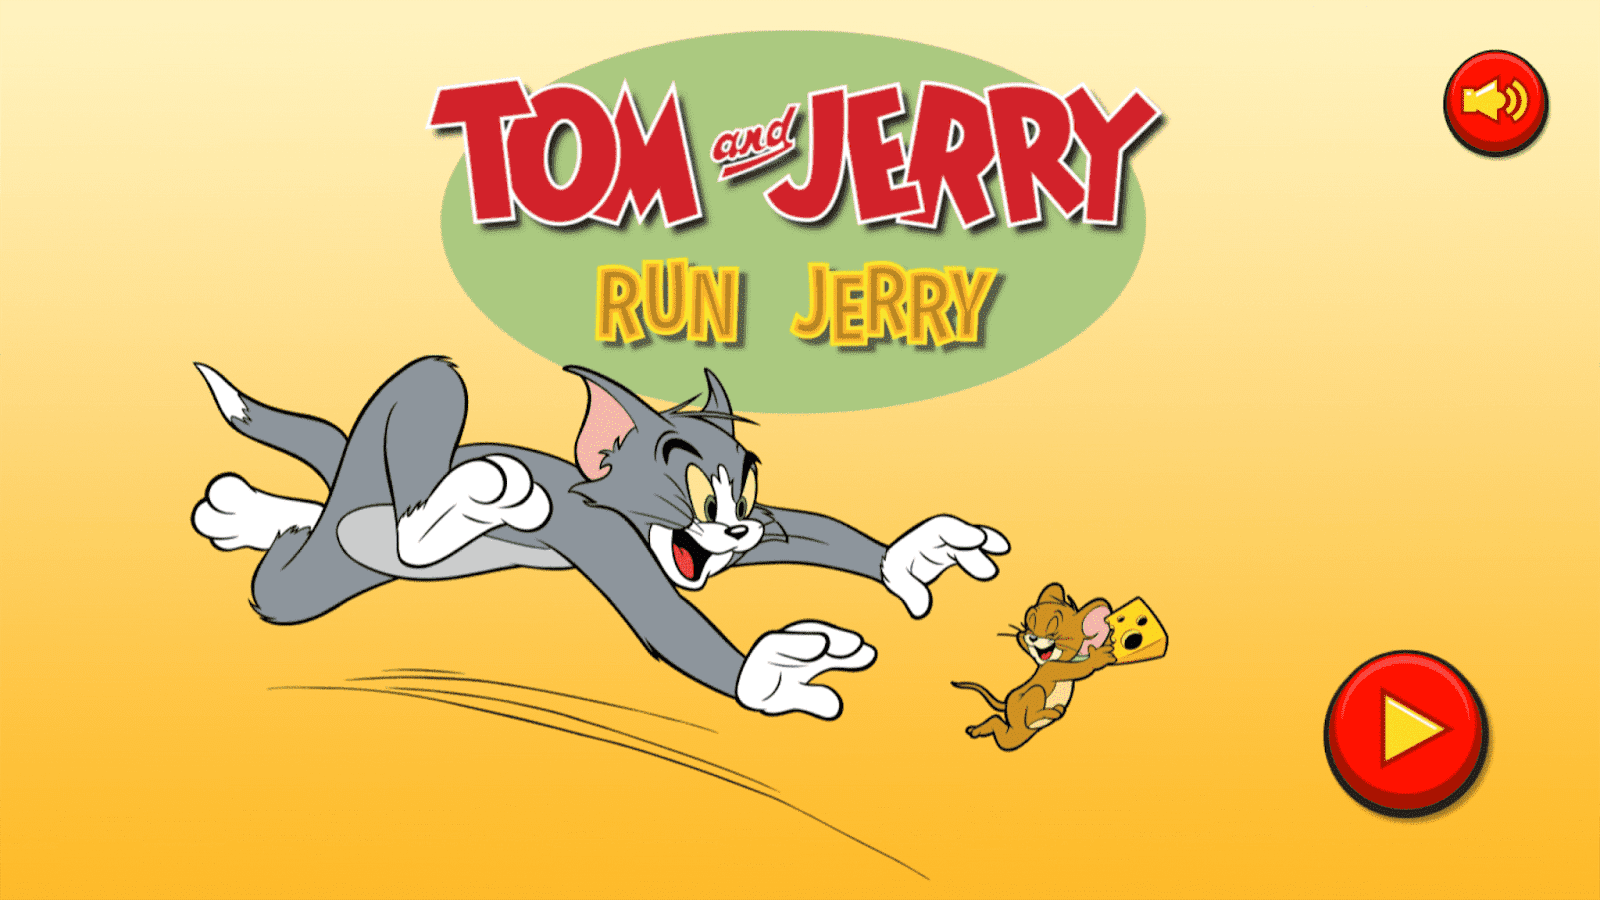 Tom and jerry 55. Том и Джерри. Том и Джерри Джерри. Том и Джерри игра. Том и Джерри бегут.